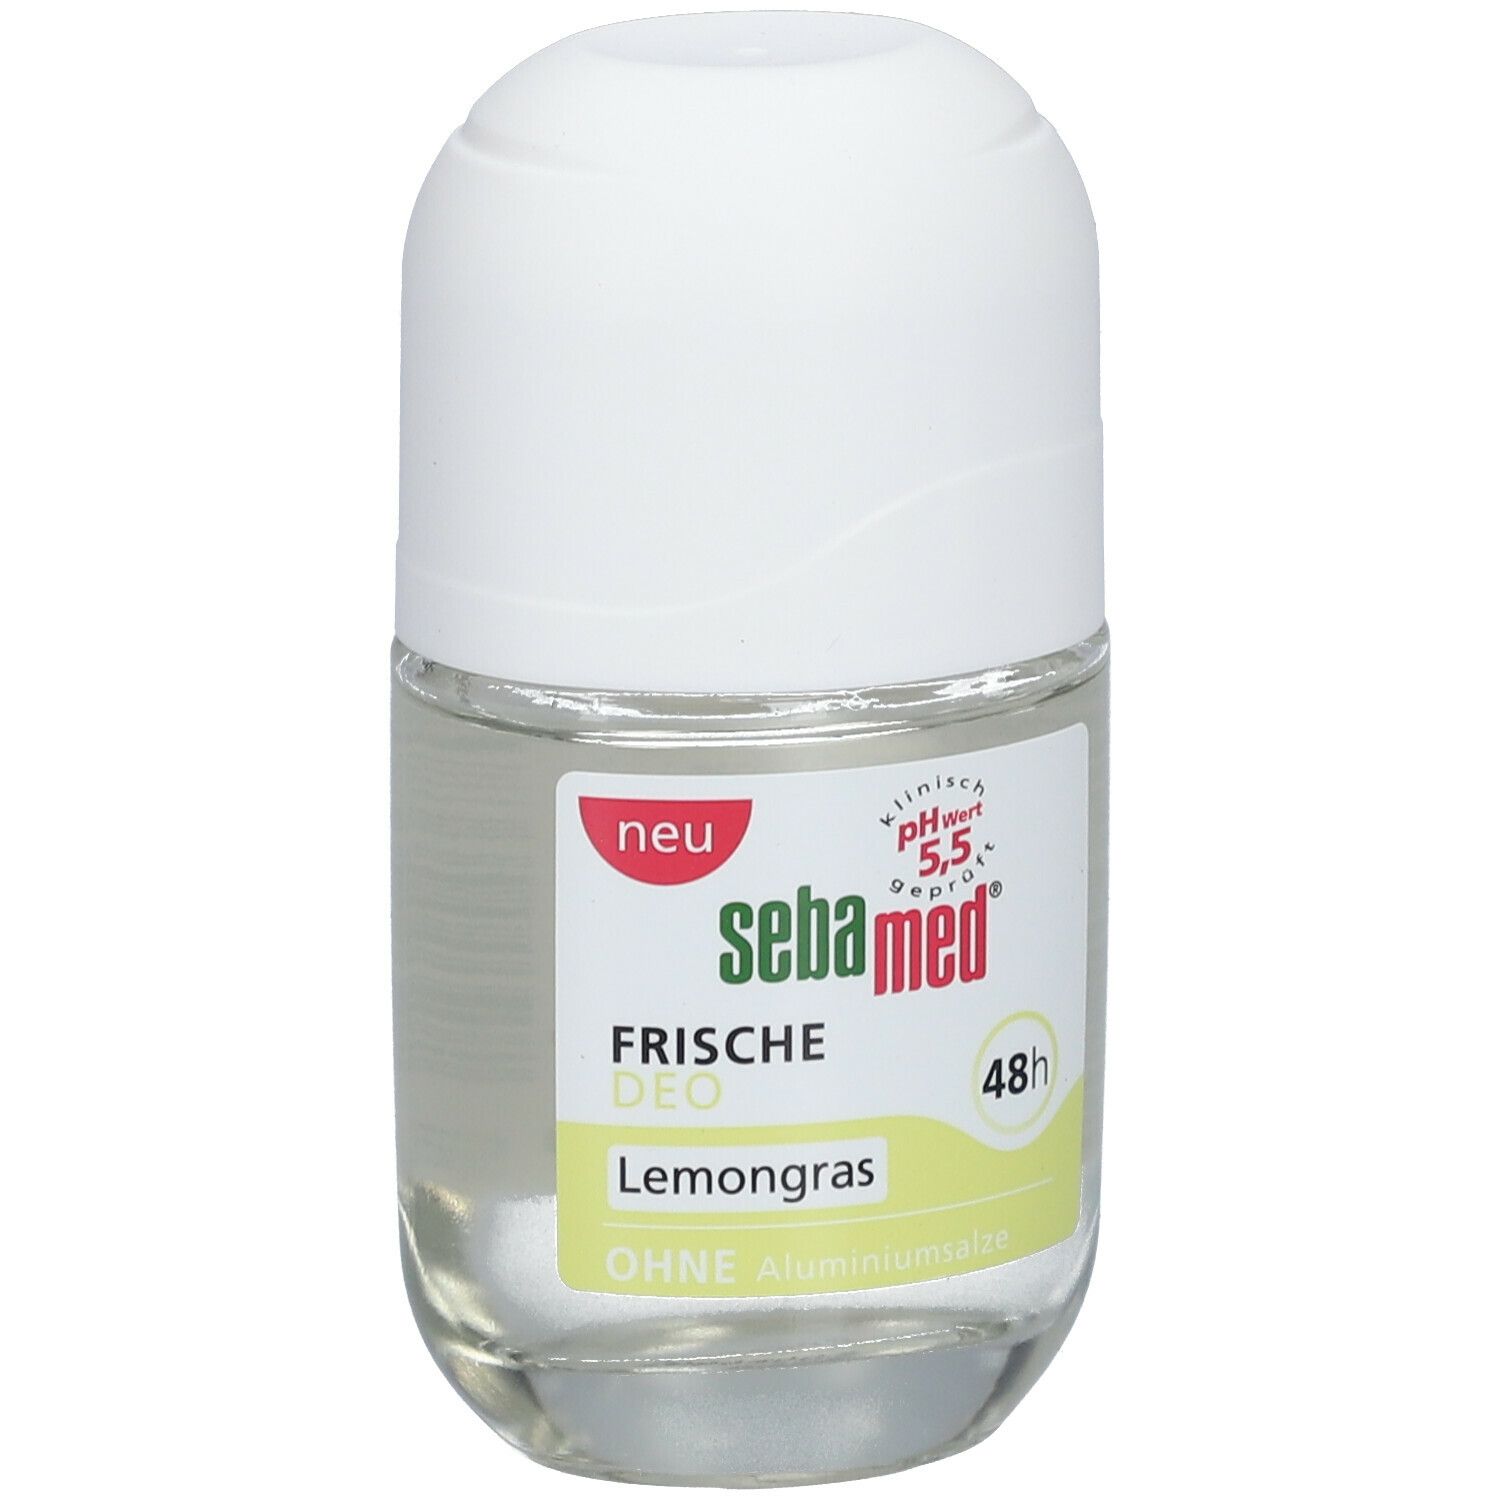 Sebamed Frische Deo Lemongras Glas Deo-Roller